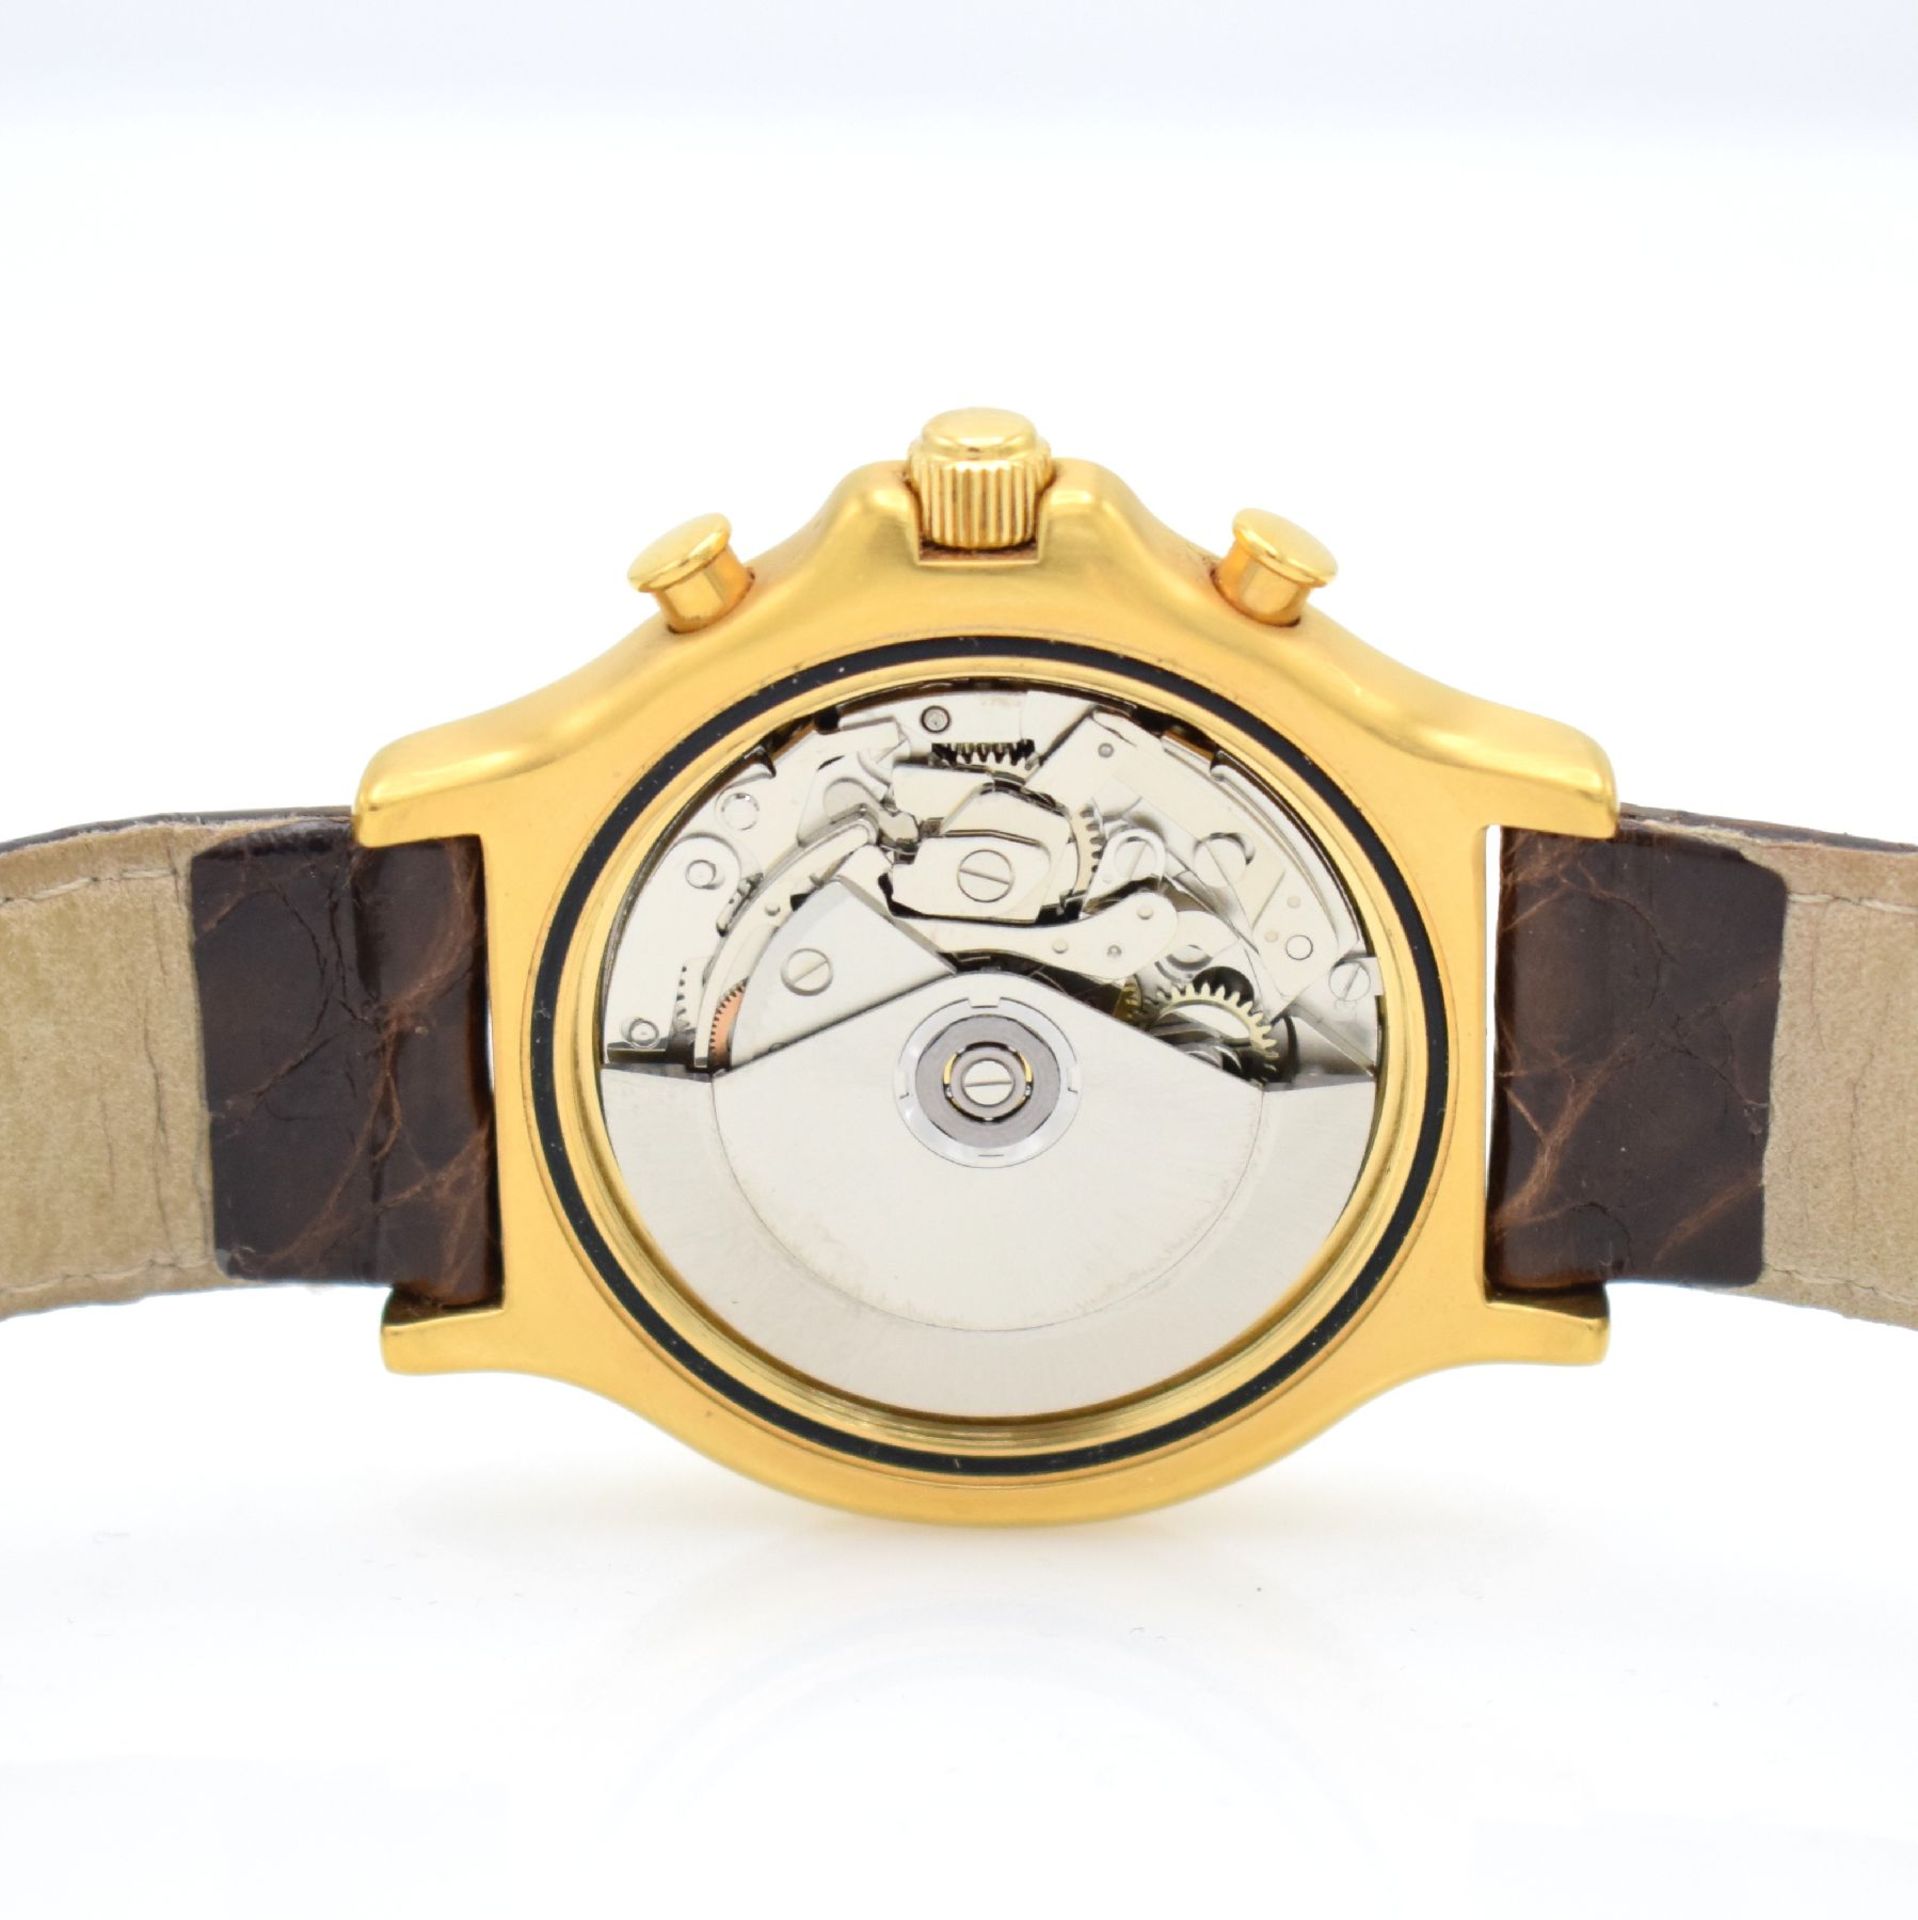 DU BOIS Regular 1 gents chronograph, Switzerland around 2000, self winding, gold plated case, - Bild 6 aus 7